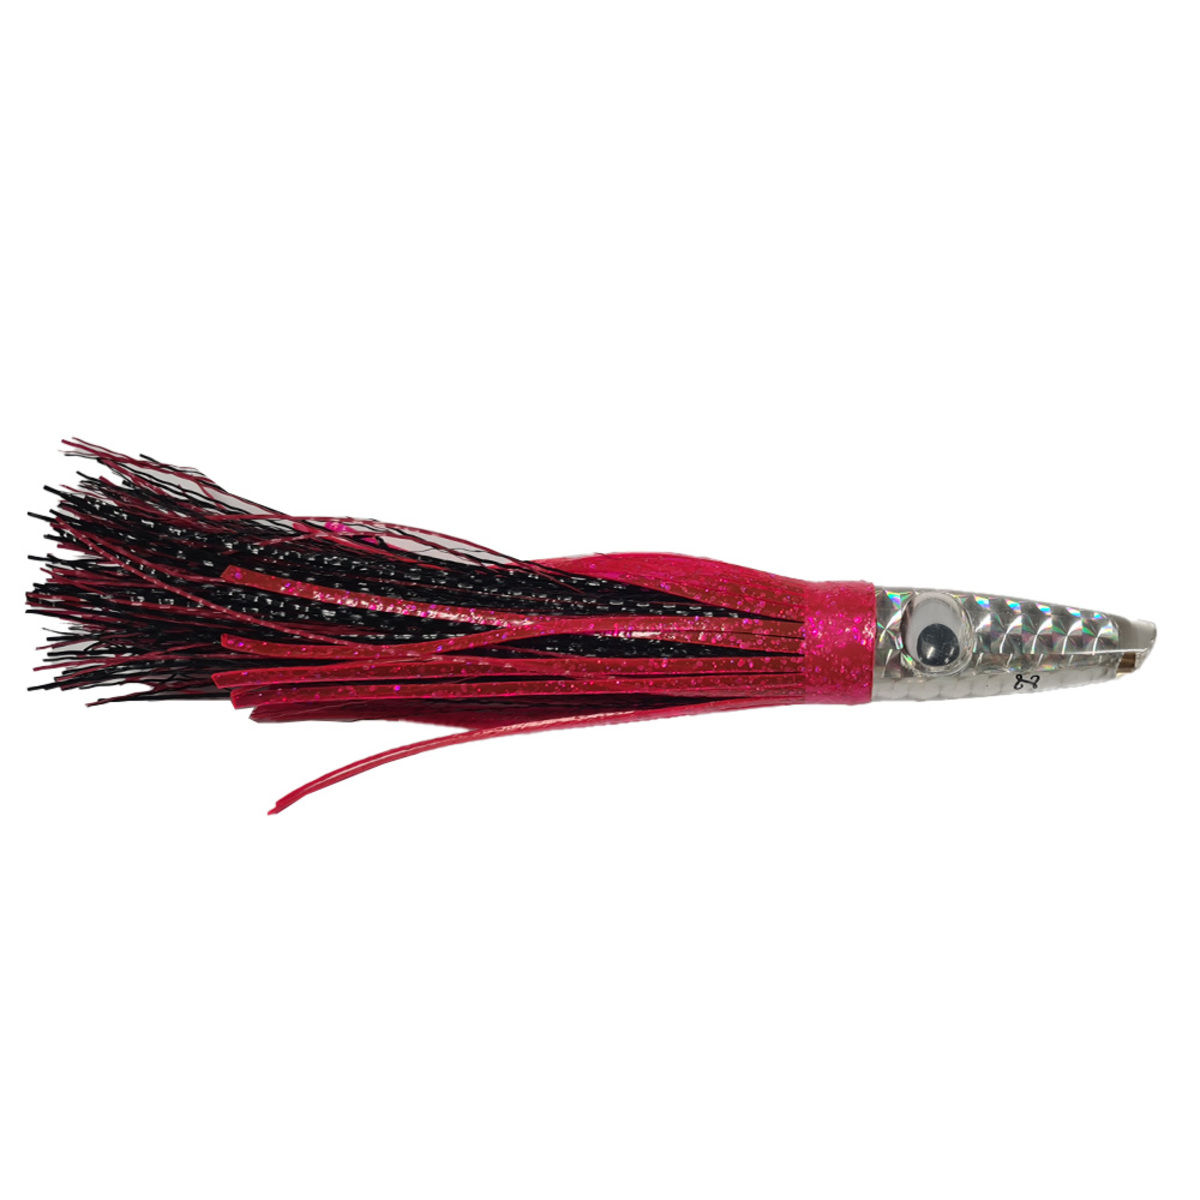 Zuker Ztwg11 Black/Red/Pink Grass Skirt Lure